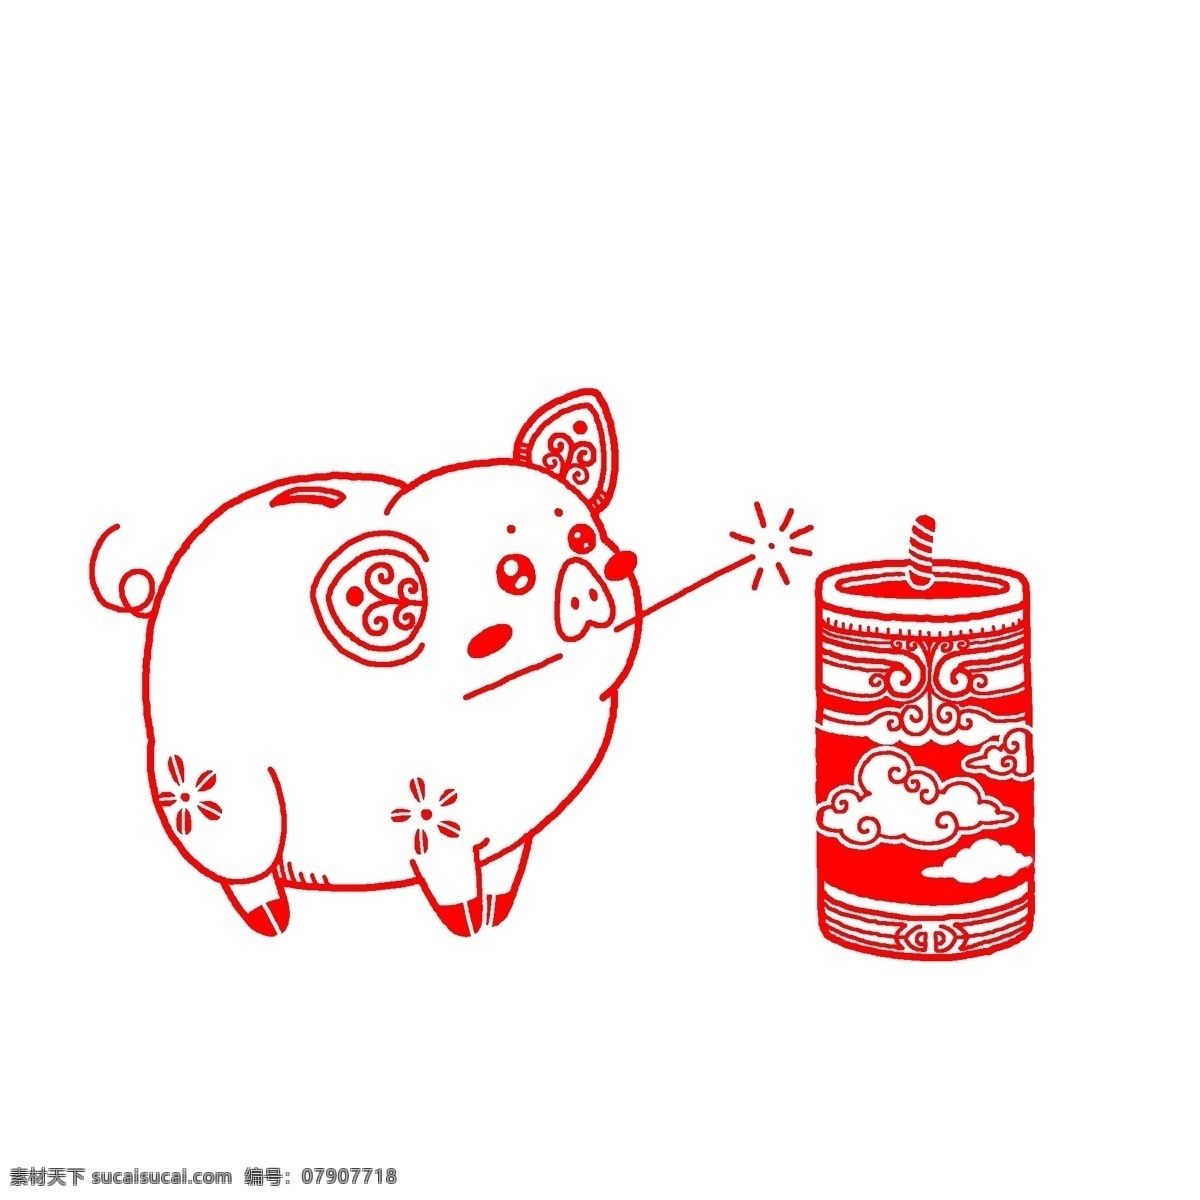 红色 剪纸 可爱 猪 过年 新年 红色剪纸 可爱的猪 猪年 红色的猪 炮仗 鞭炮 爆竹烟花 贴花 窗花 新春 喜庆 卡通猪